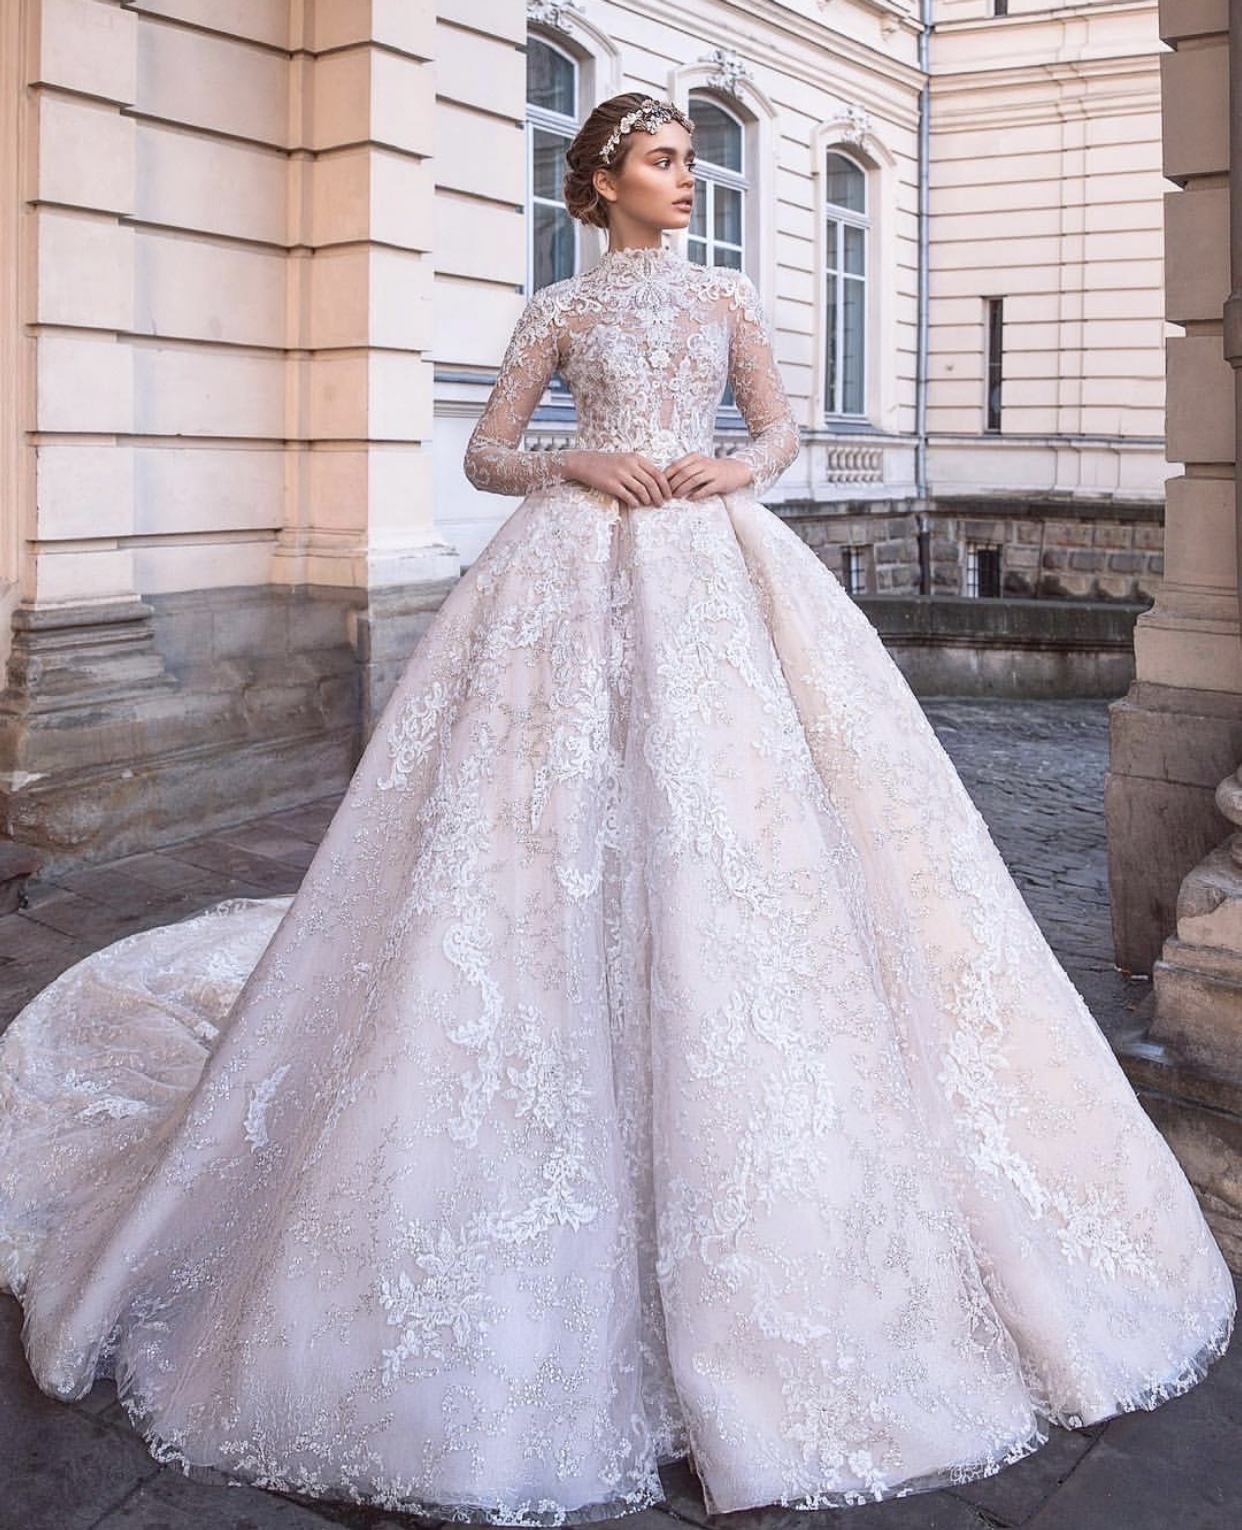 为全世界新娘输出了源源不断的创意,显而易见的欧洲风格婚纱高贵奢华